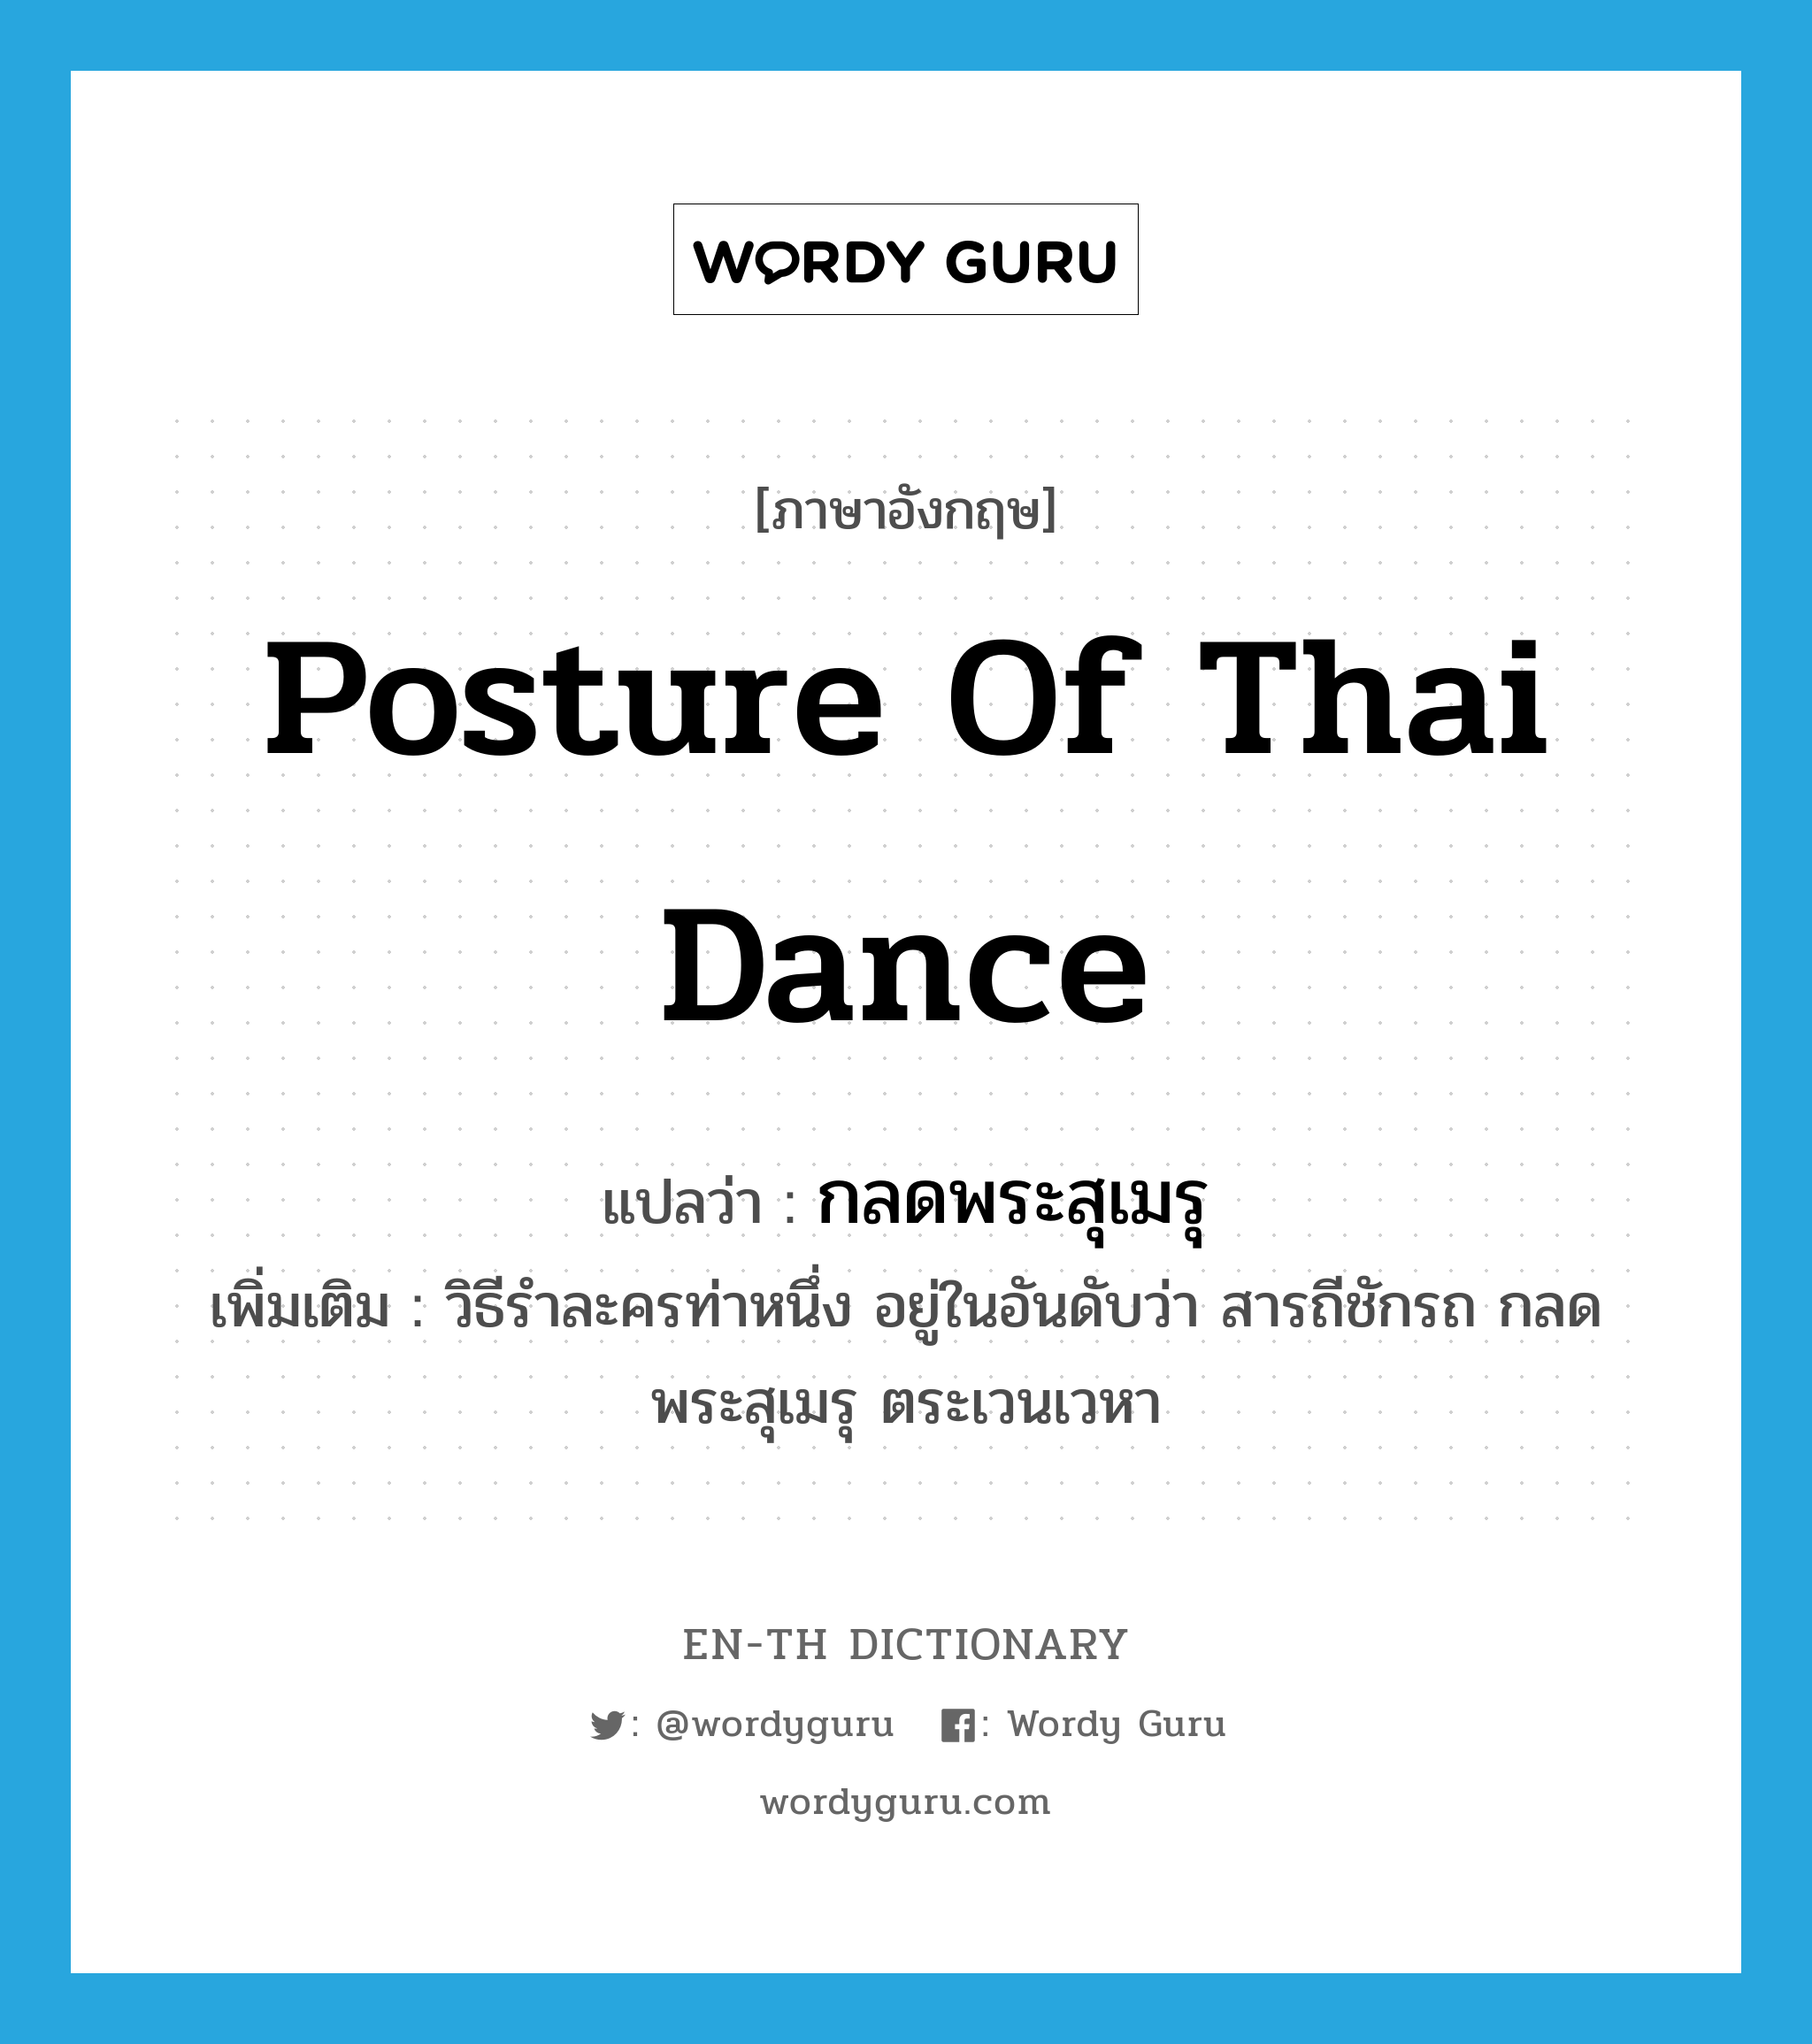 กลดพระสุเมรุ ภาษาอังกฤษ?, คำศัพท์ภาษาอังกฤษ กลดพระสุเมรุ แปลว่า posture of Thai dance ประเภท N เพิ่มเติม วิธีรำละครท่าหนึ่ง อยู่ในอันดับว่า สารถีชักรถ กลดพระสุเมรุ ตระเวนเวหา หมวด N